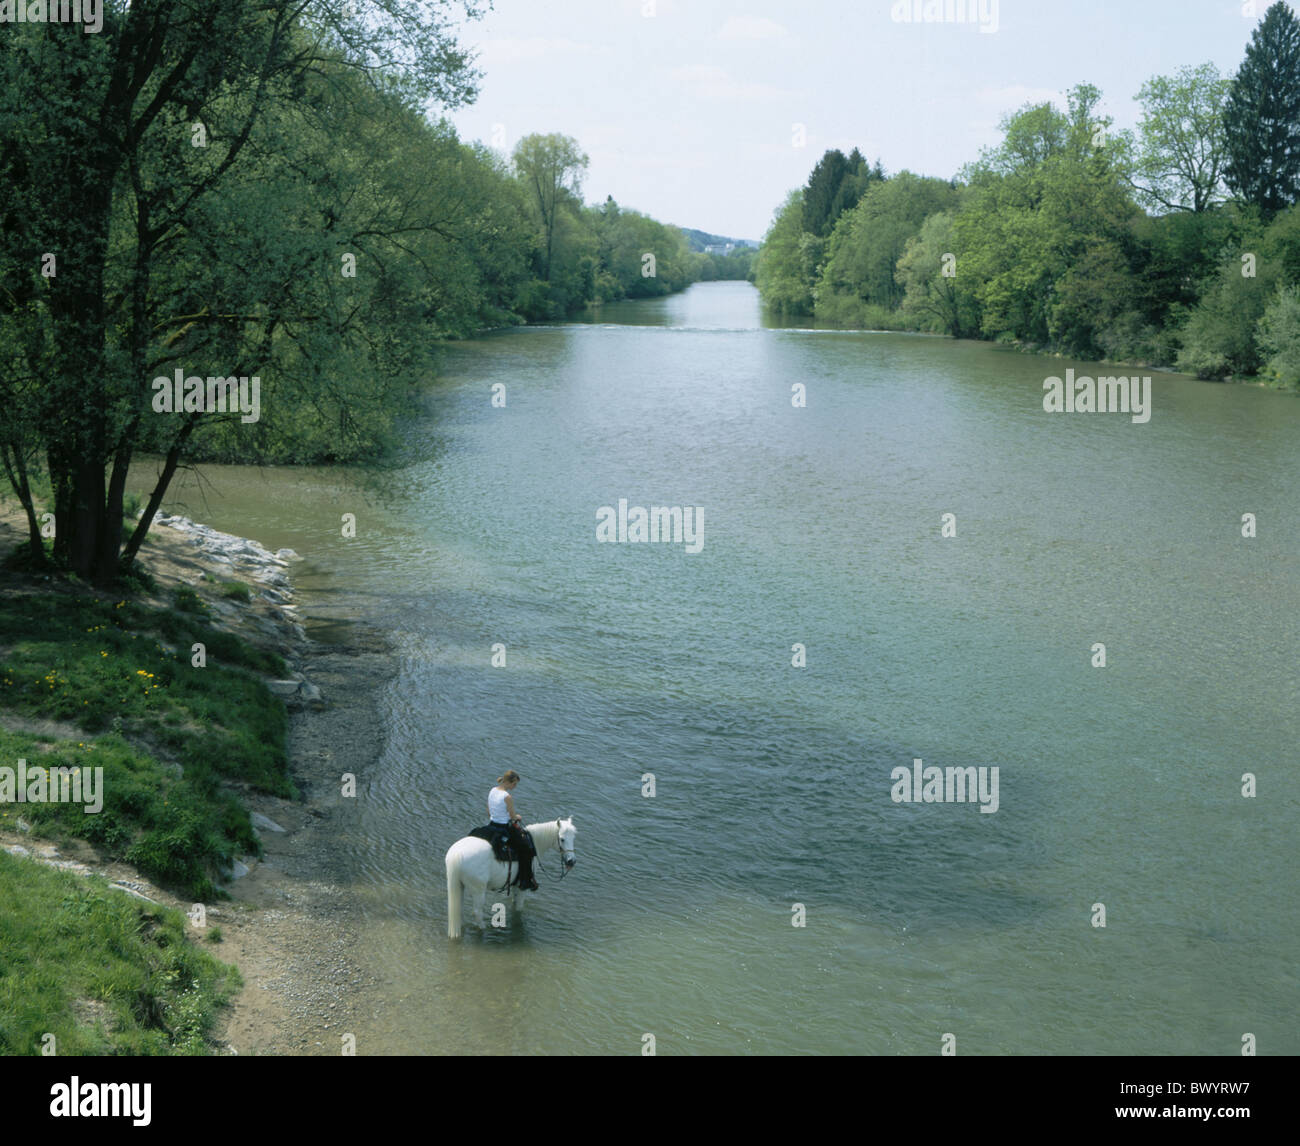 Le débit de la rivière canton de Thurgovie femme fille modèle ne libération cheval équitation Suisse Europe Thur sommaire Banque D'Images